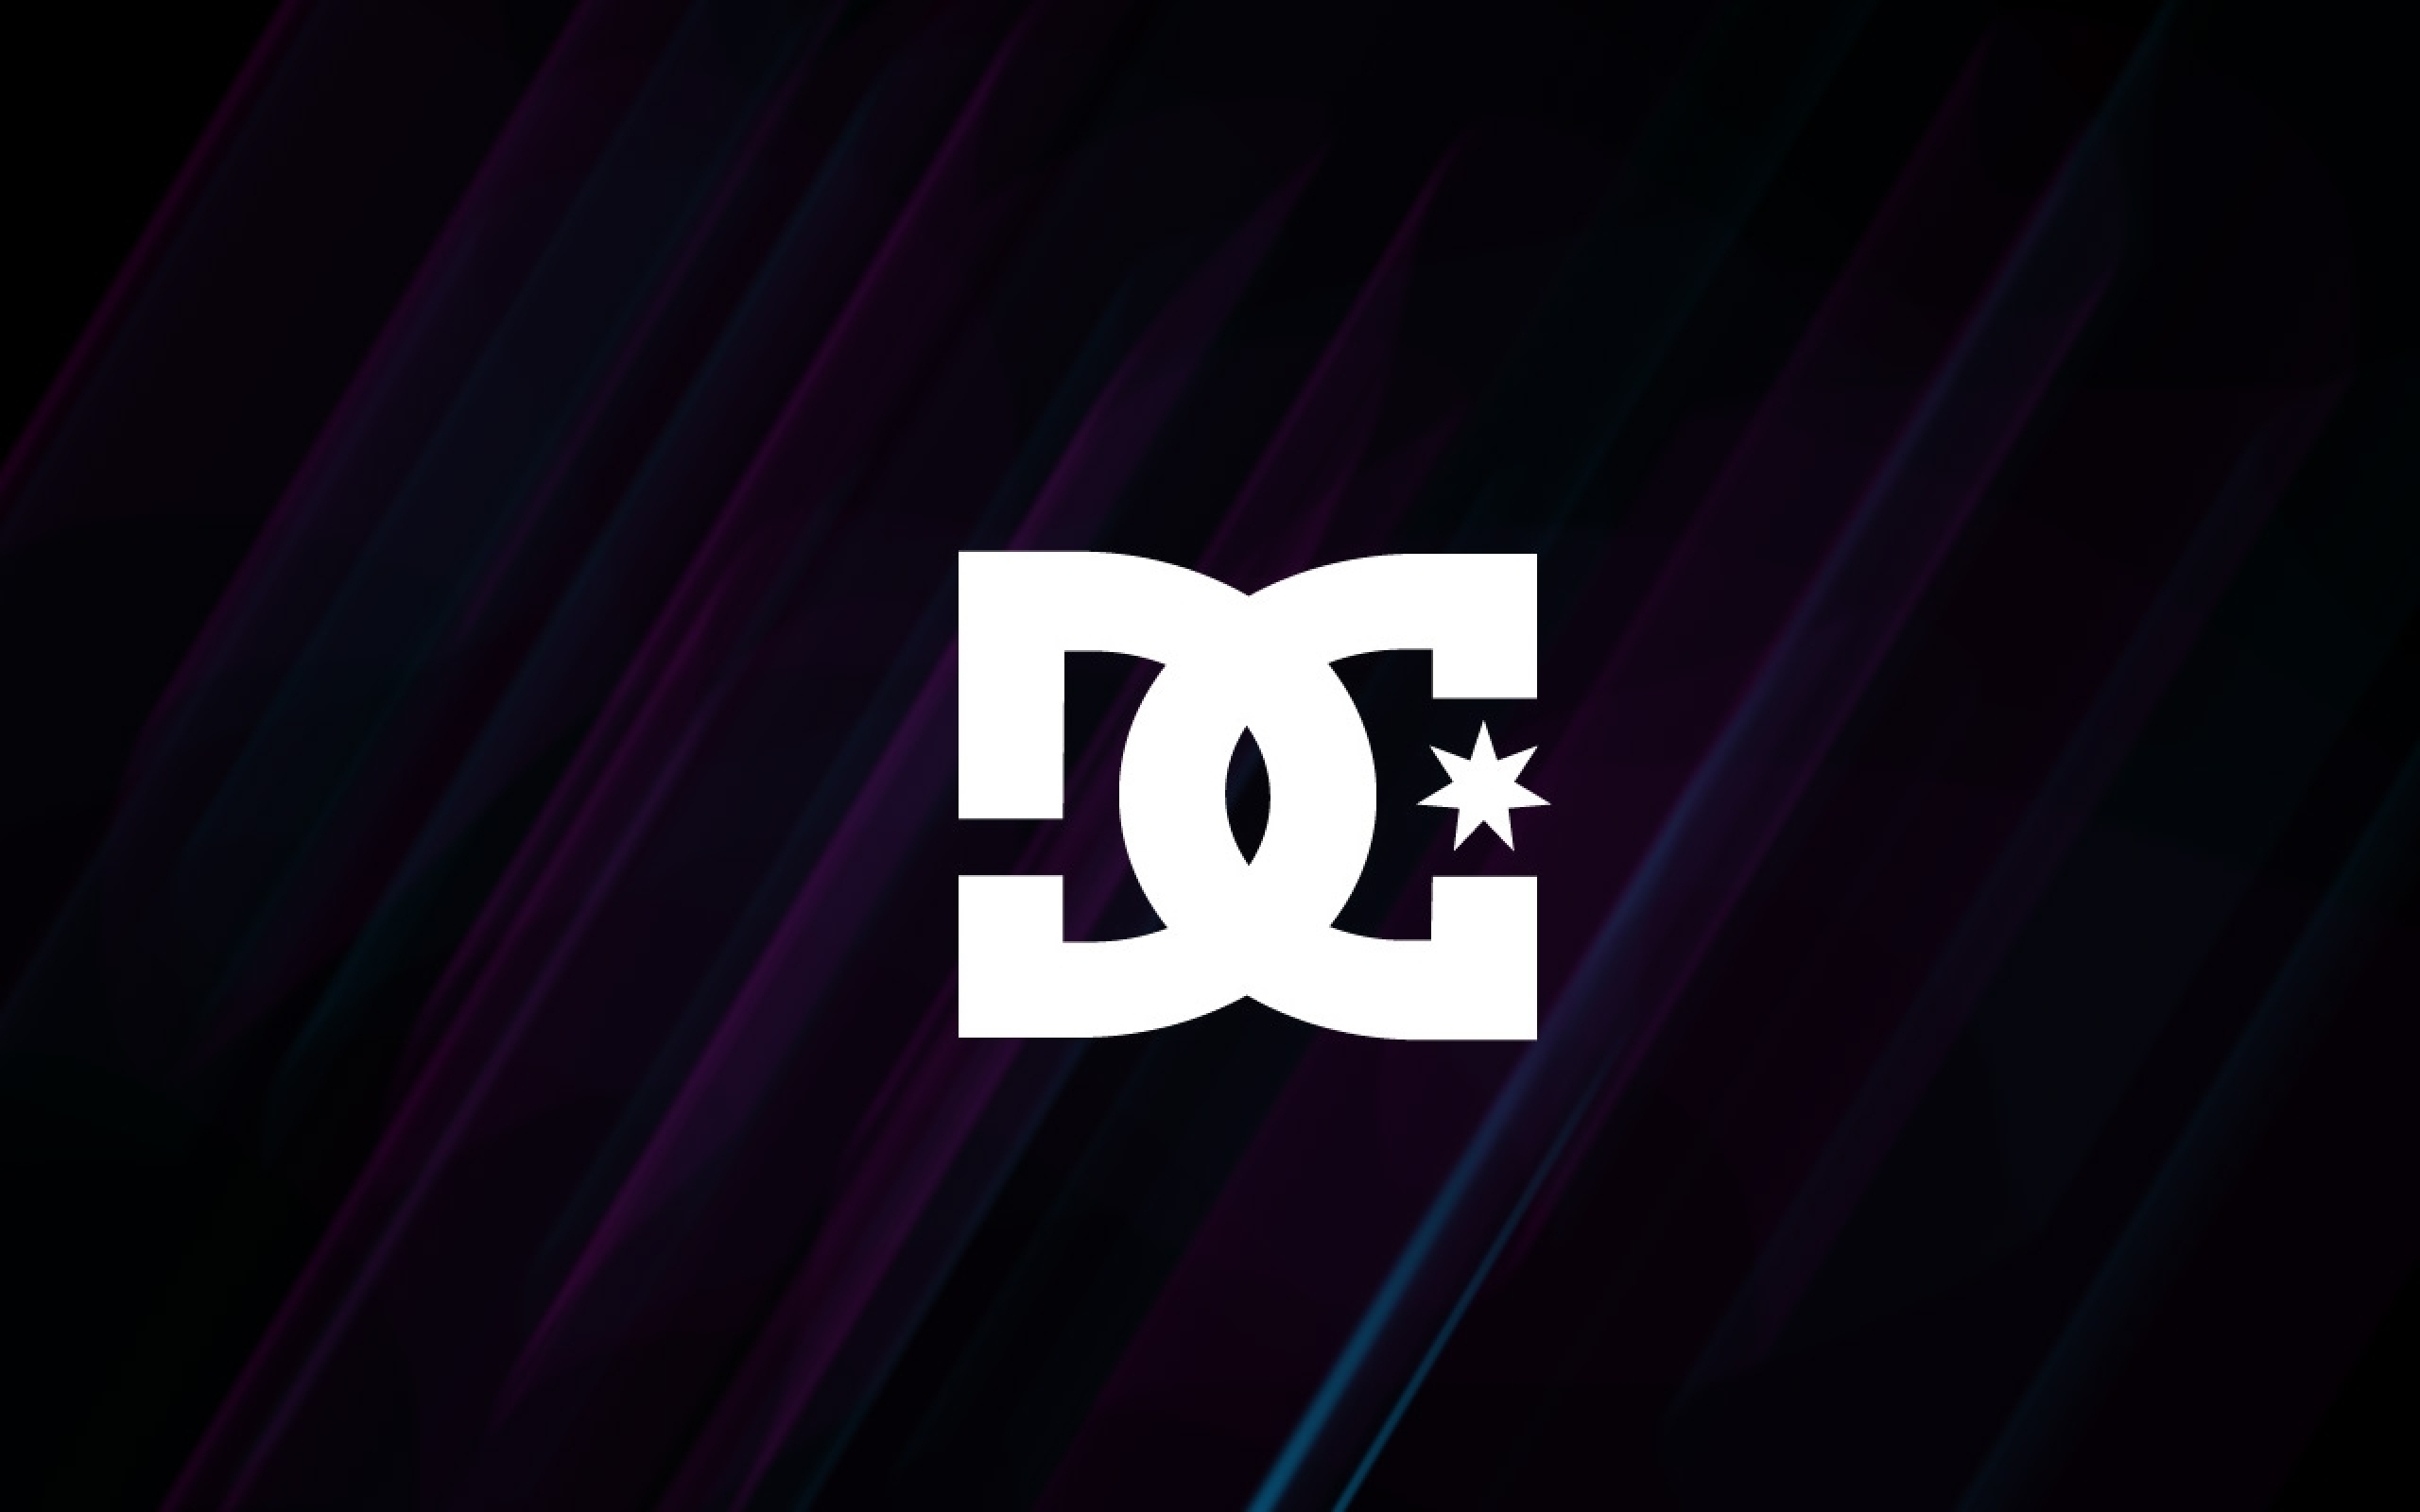 dc logo wallpaper,texto,fuente,violeta,púrpura,gráficos